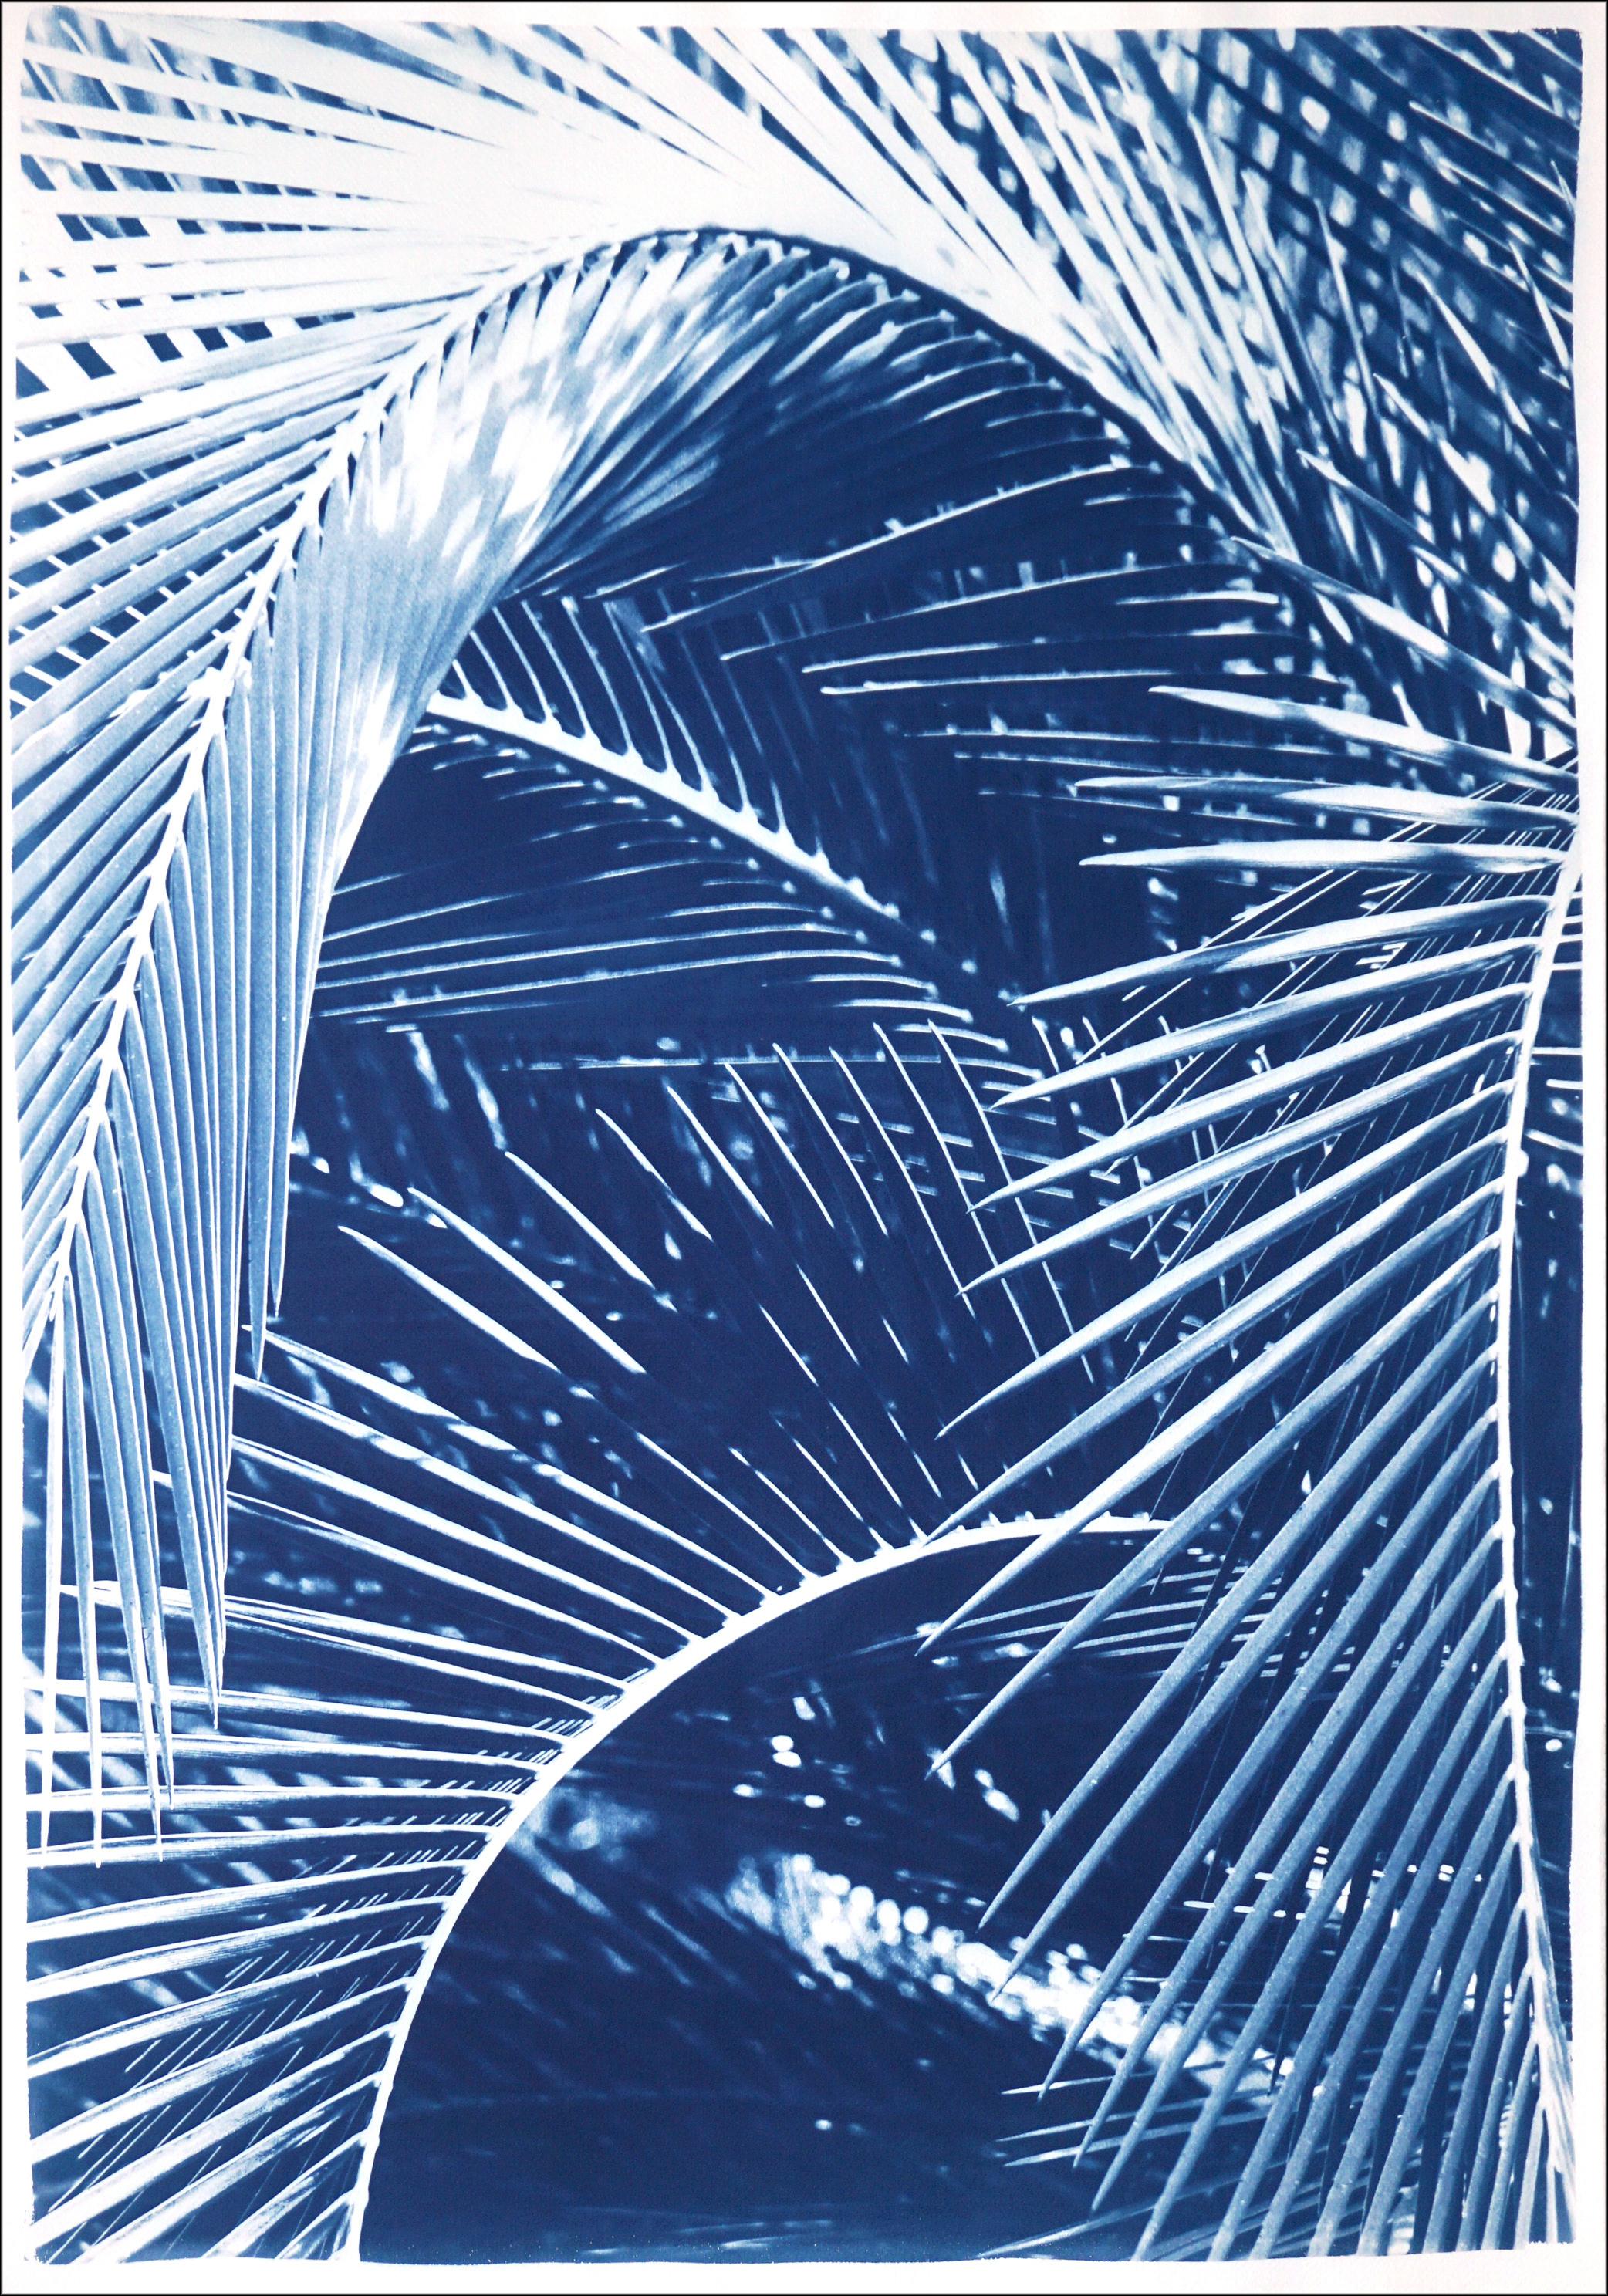 Still-Life Photograph Kind of Cyan - Feuilles de palmier de jardin botaniques, impression de natures mortes tropicales faites à la main dans les tons bleus